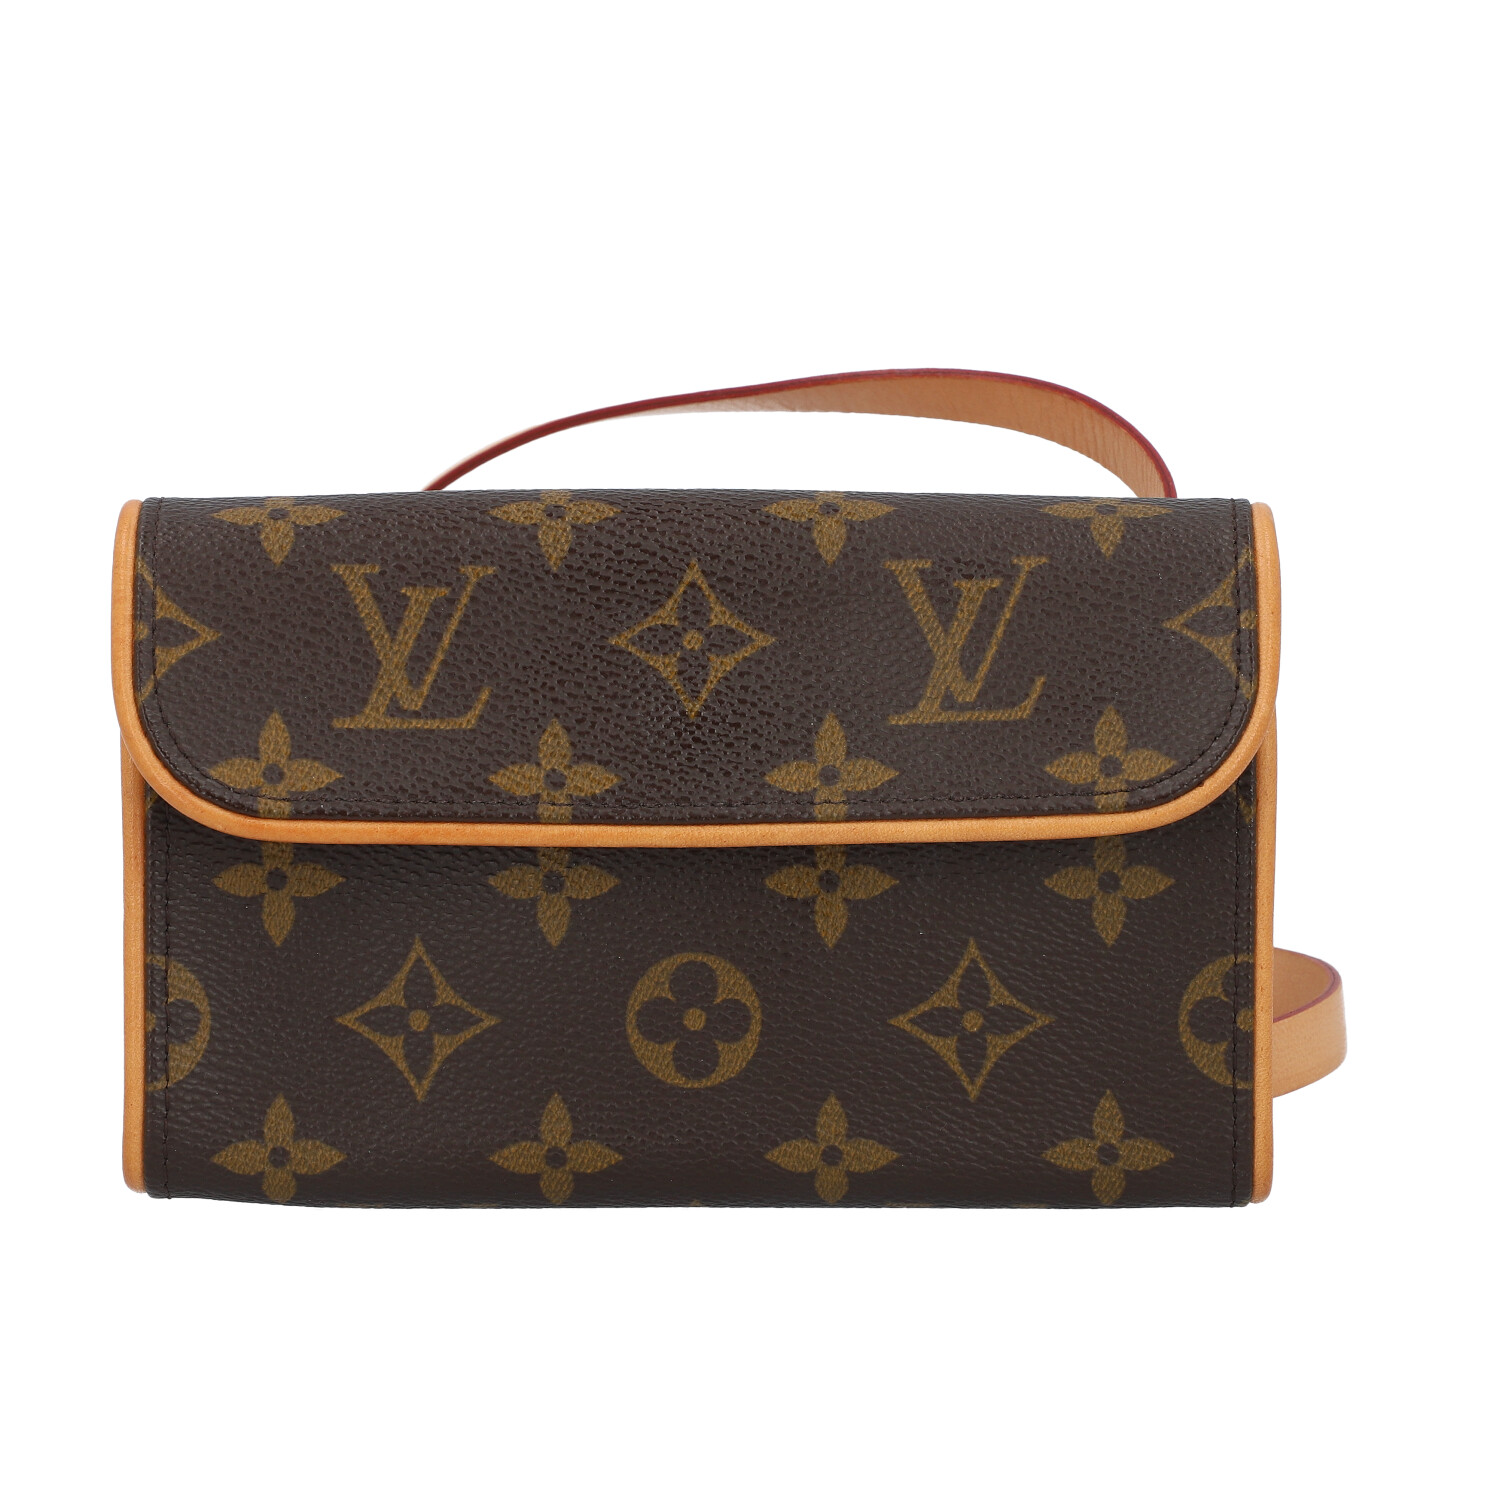 EPPLI | LOUIS VUITTON belt bag 'FLORENTINE'. | purchase online